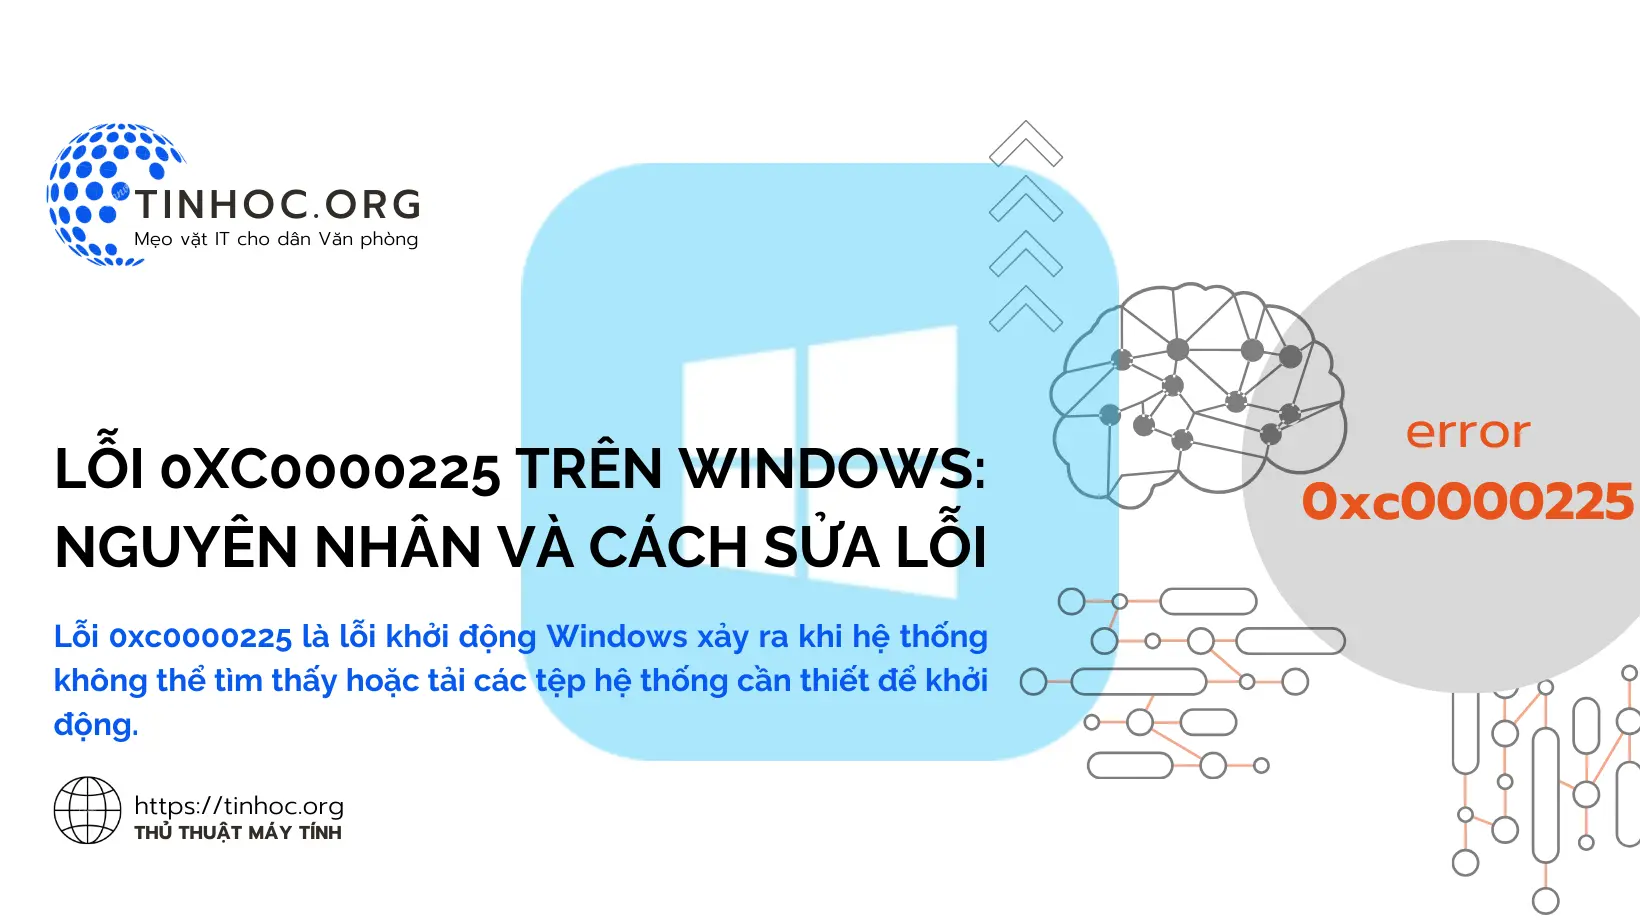 Lỗi 0xc0000225 là lỗi khởi động Windows xảy ra khi hệ thống không thể tìm thấy hoặc tải các tệp hệ thống cần thiết để khởi động.